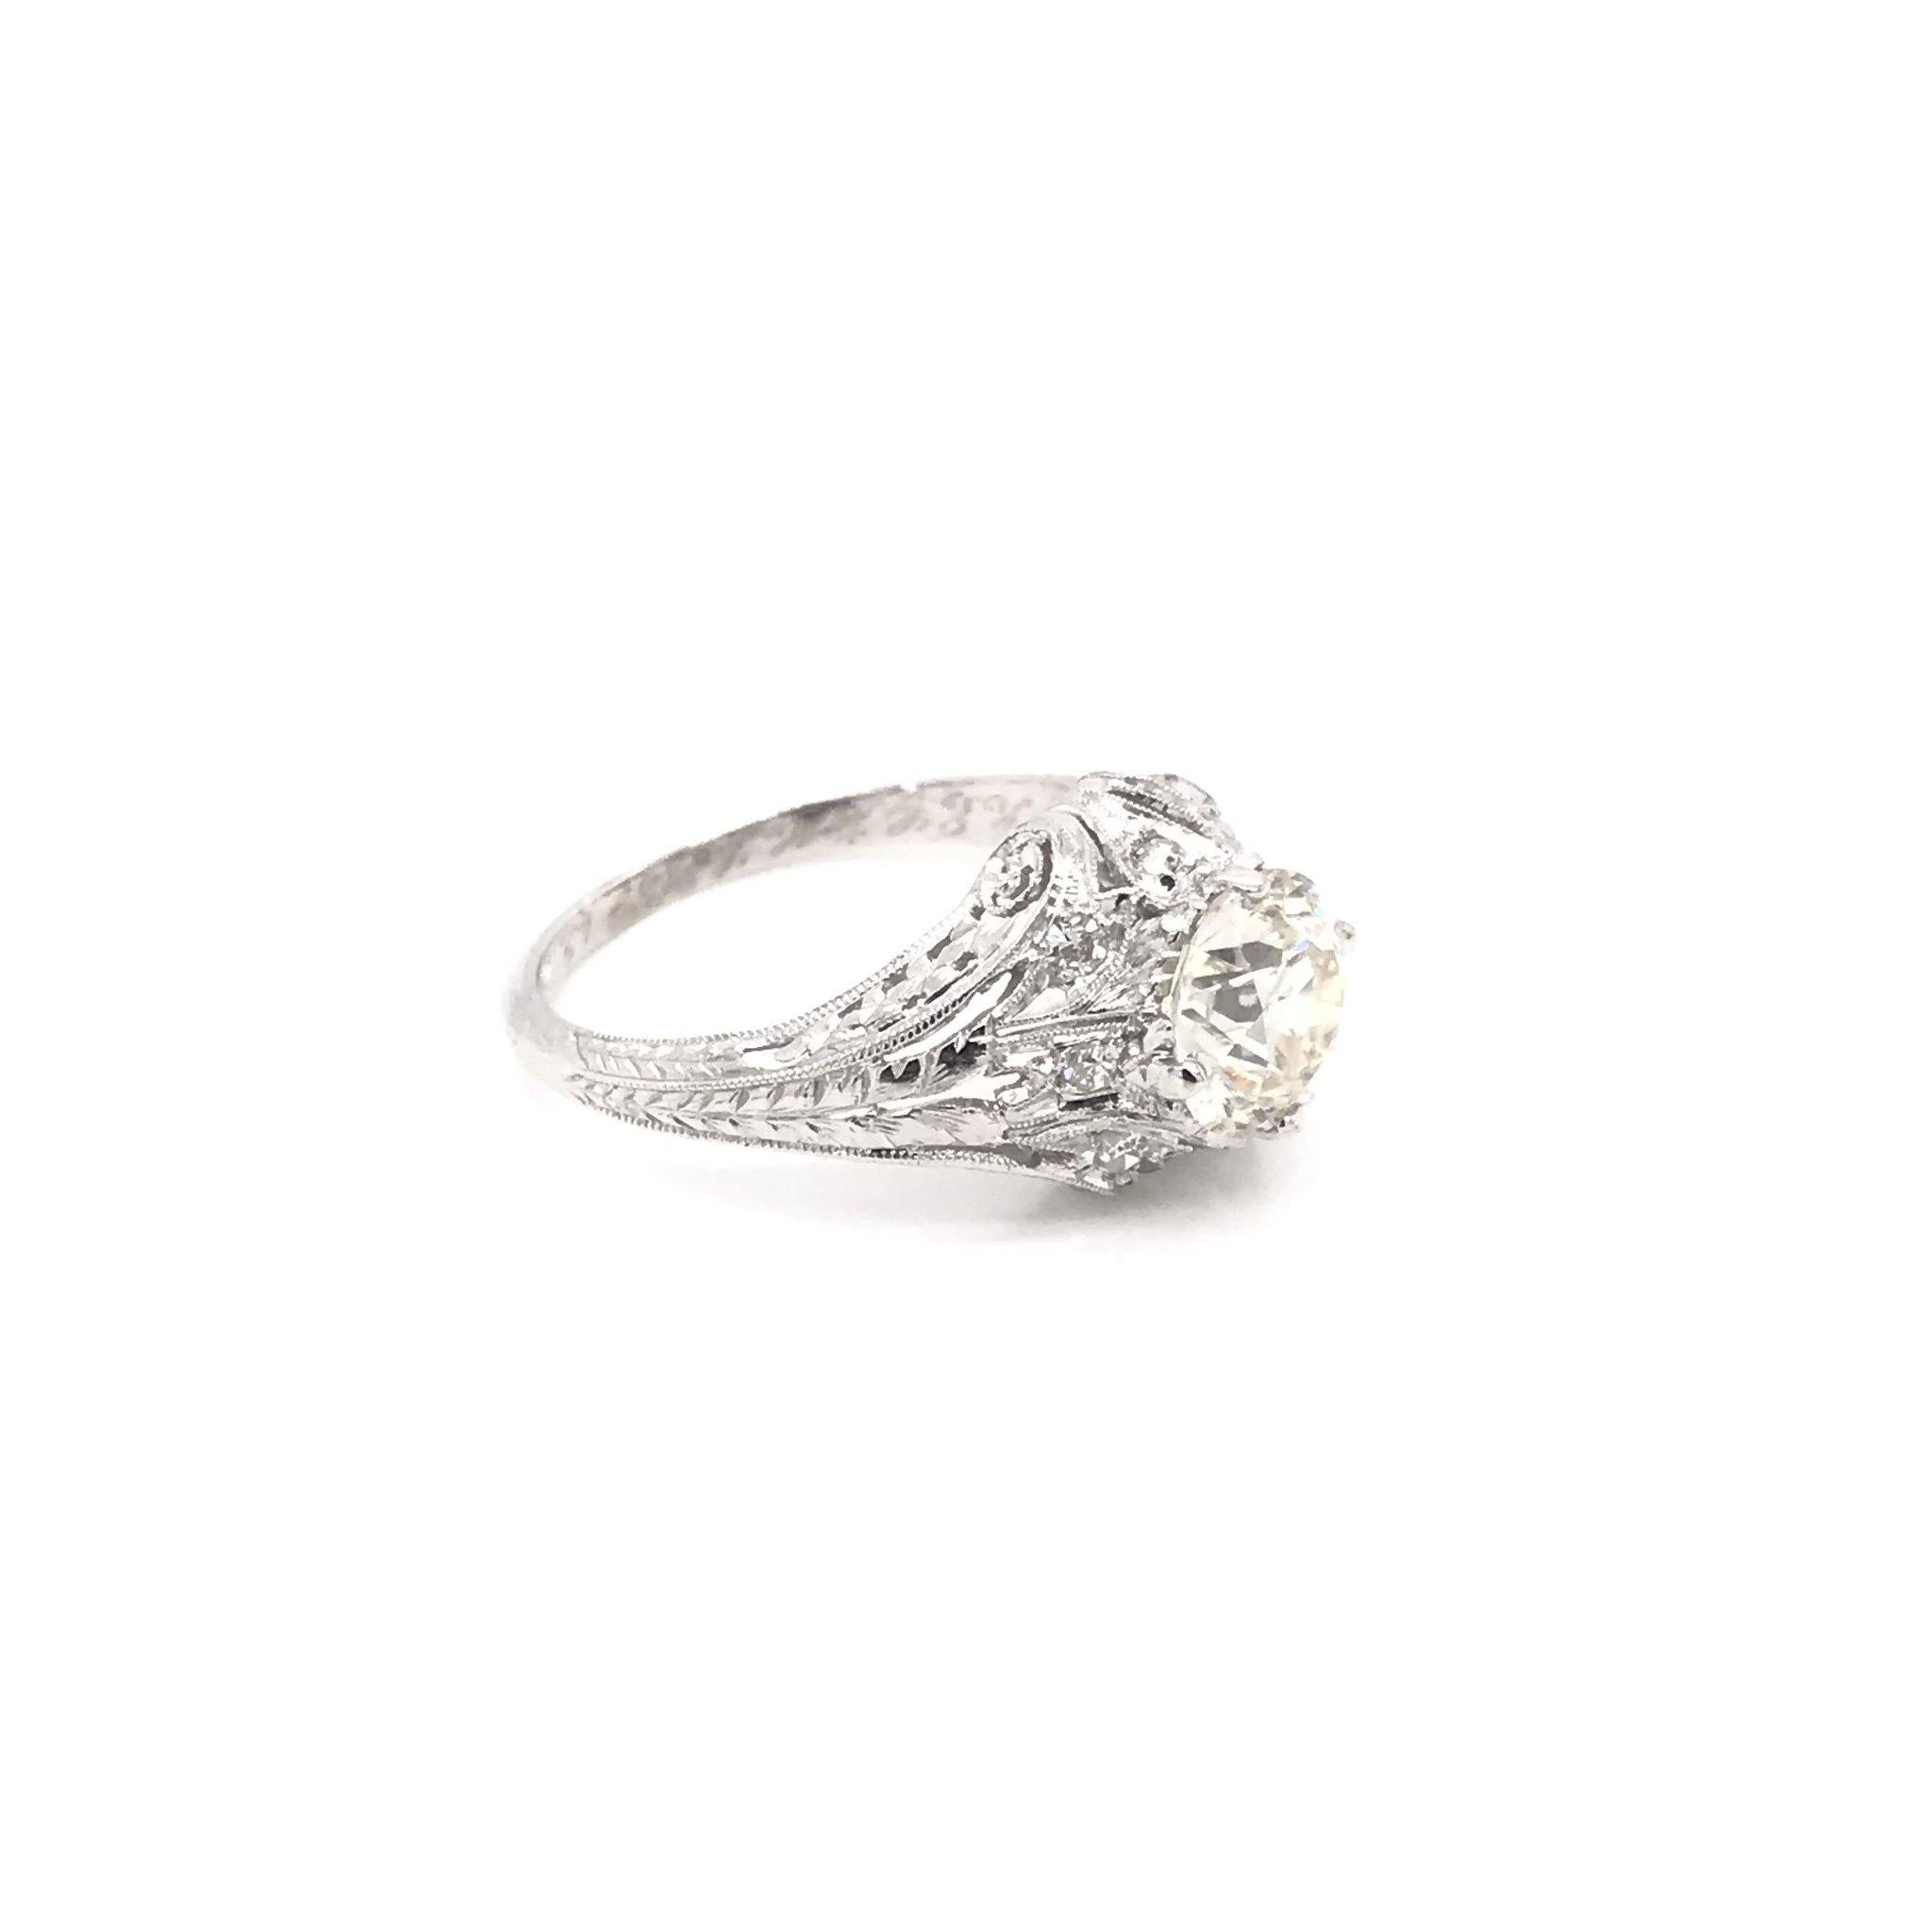 Old European Cut Edwardian Era 1.54 Carat Platinum Filigree Diamond Engagement Ring